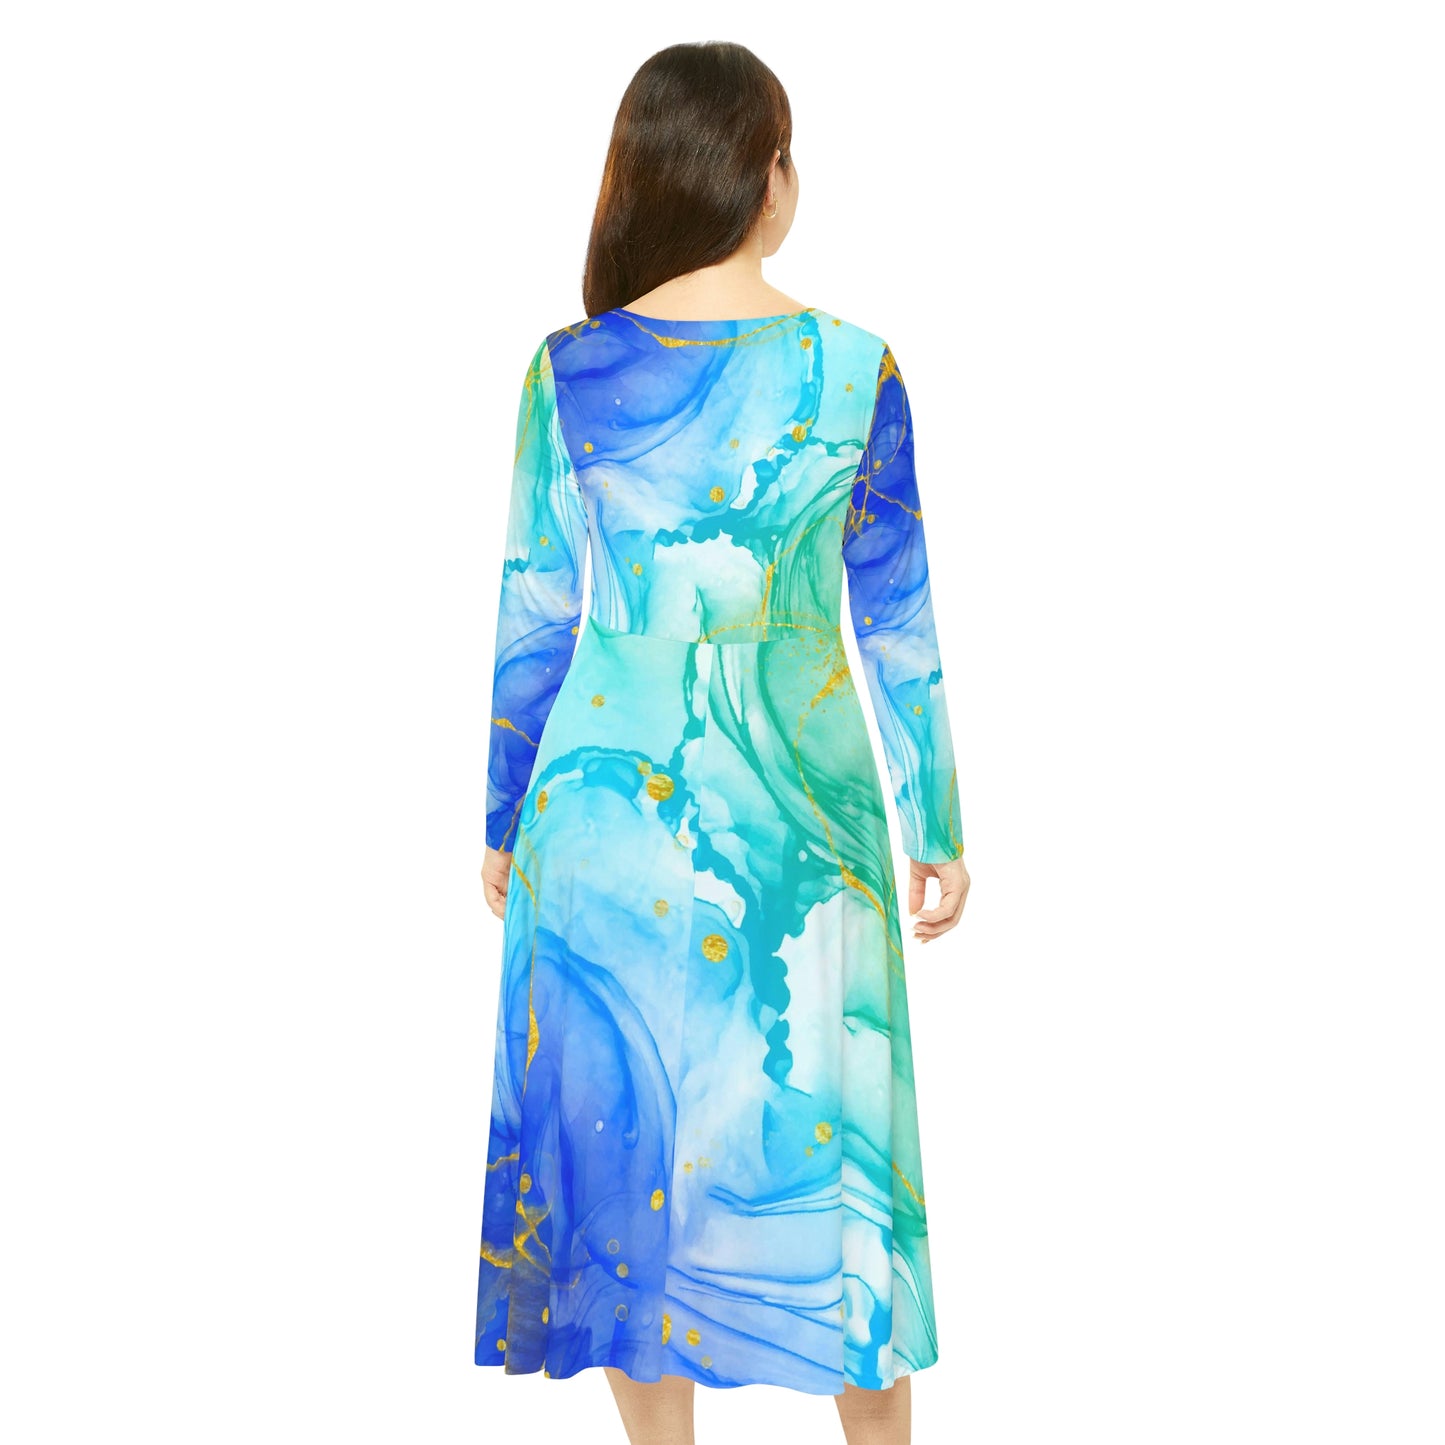 Aquarell Blue Green Gold Women's Long Sleeve Dance Dress